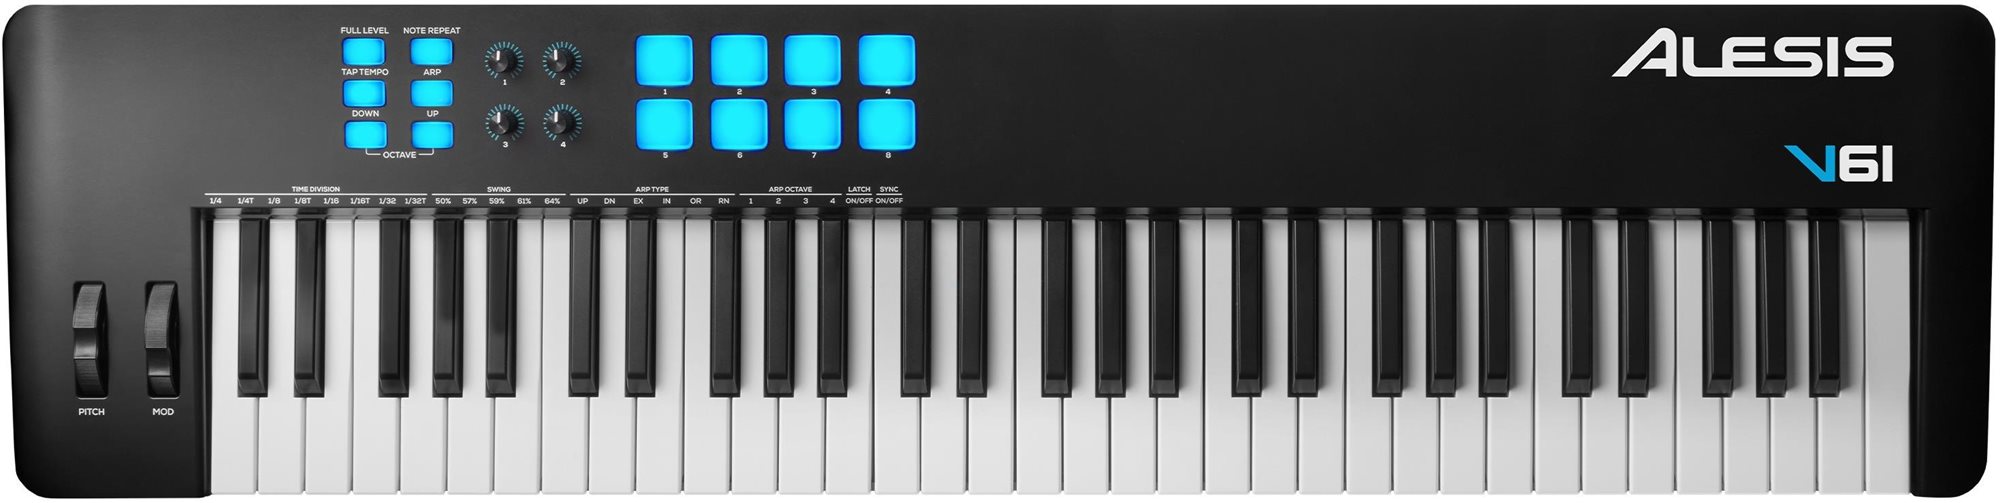 MIDI klávesy ALESIS V61 MKII